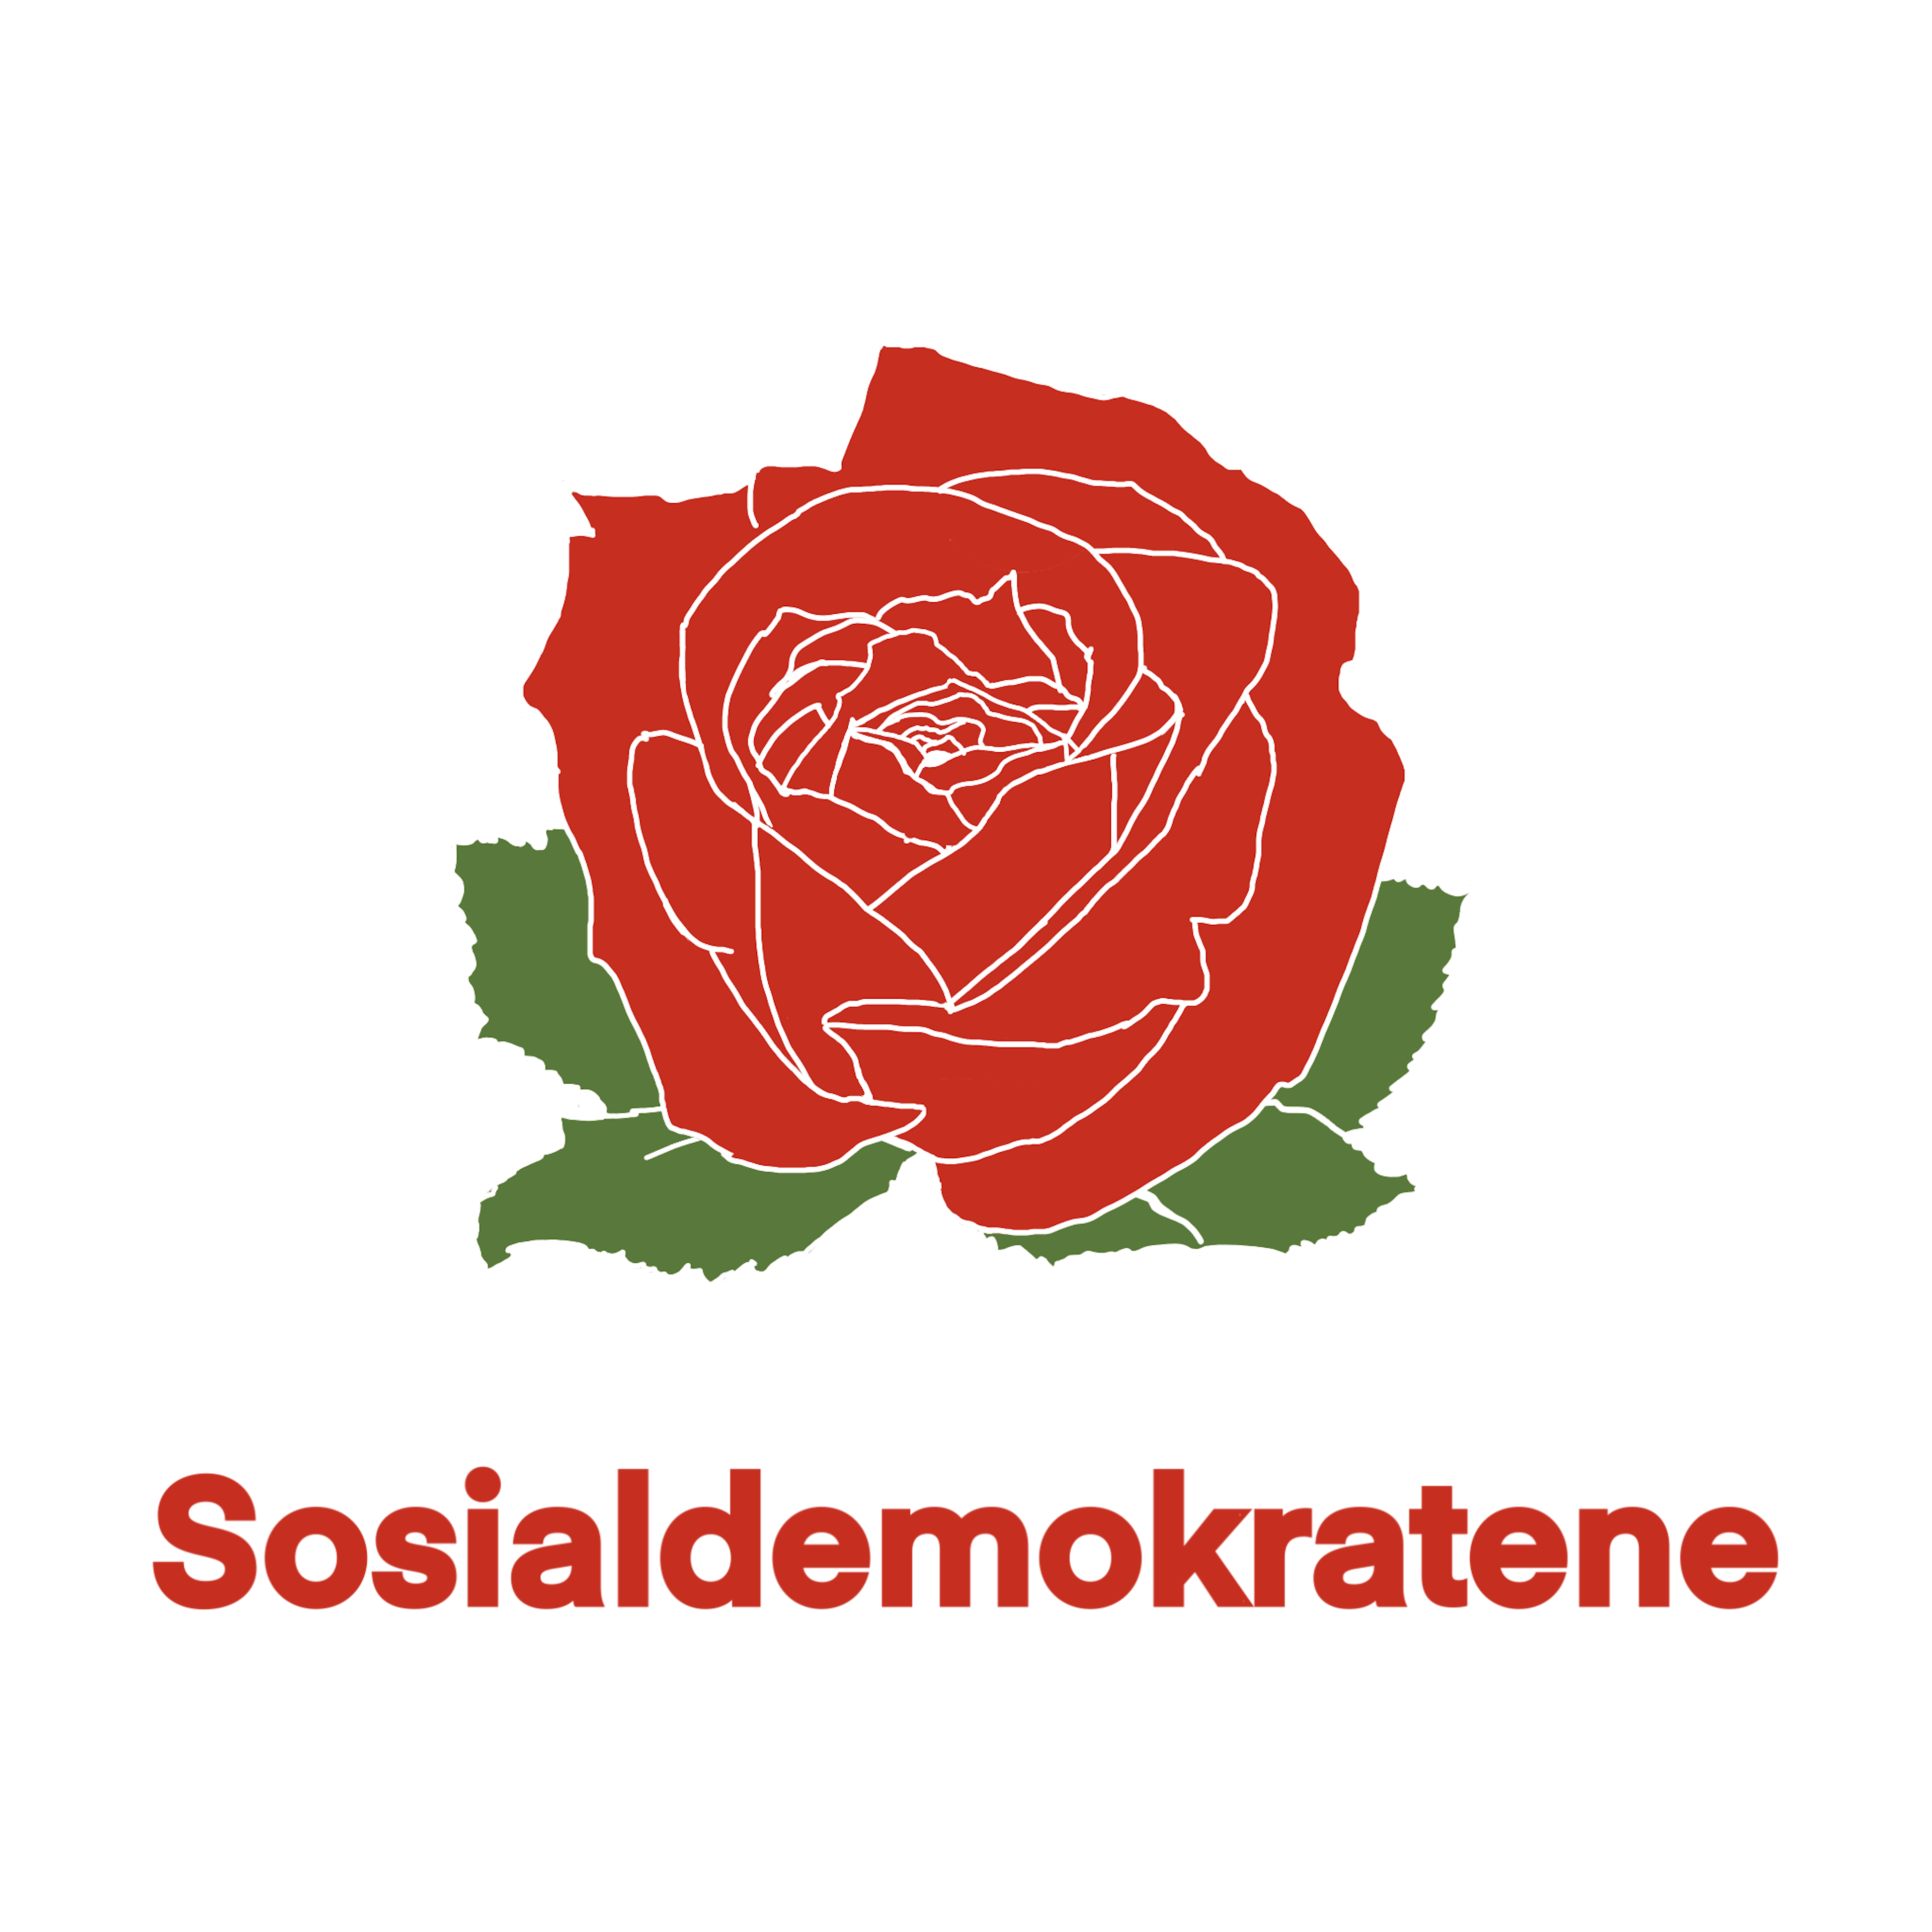 Sosialdemokratene logo png 2